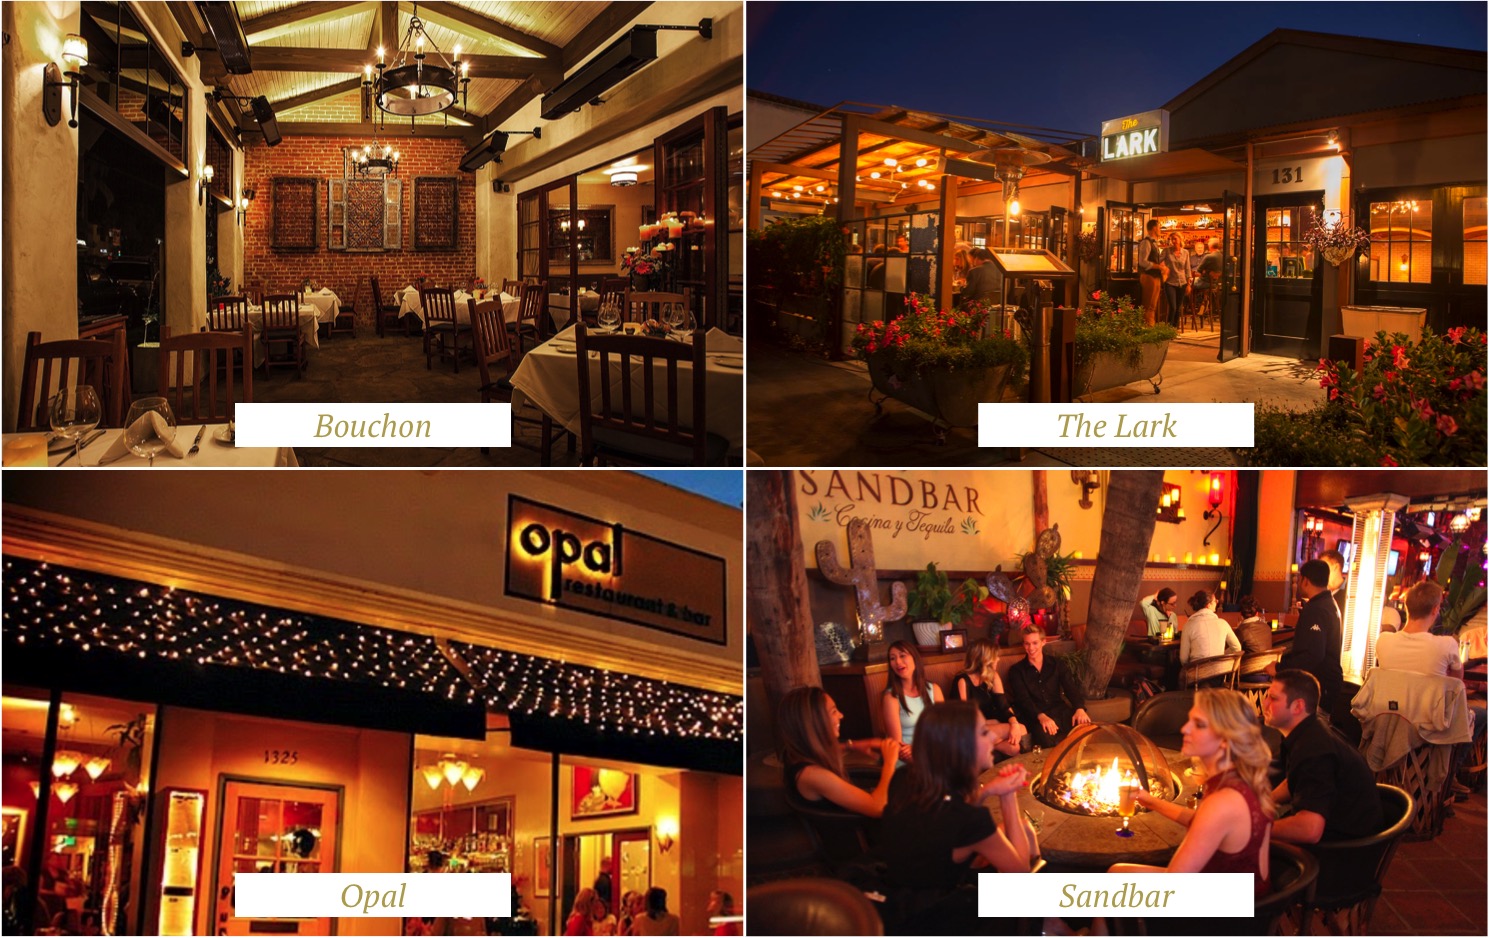 santa barbara - best restaurants - melhores restaurantes - california - highway 1 - bouchon - opal - the lark - sandbar